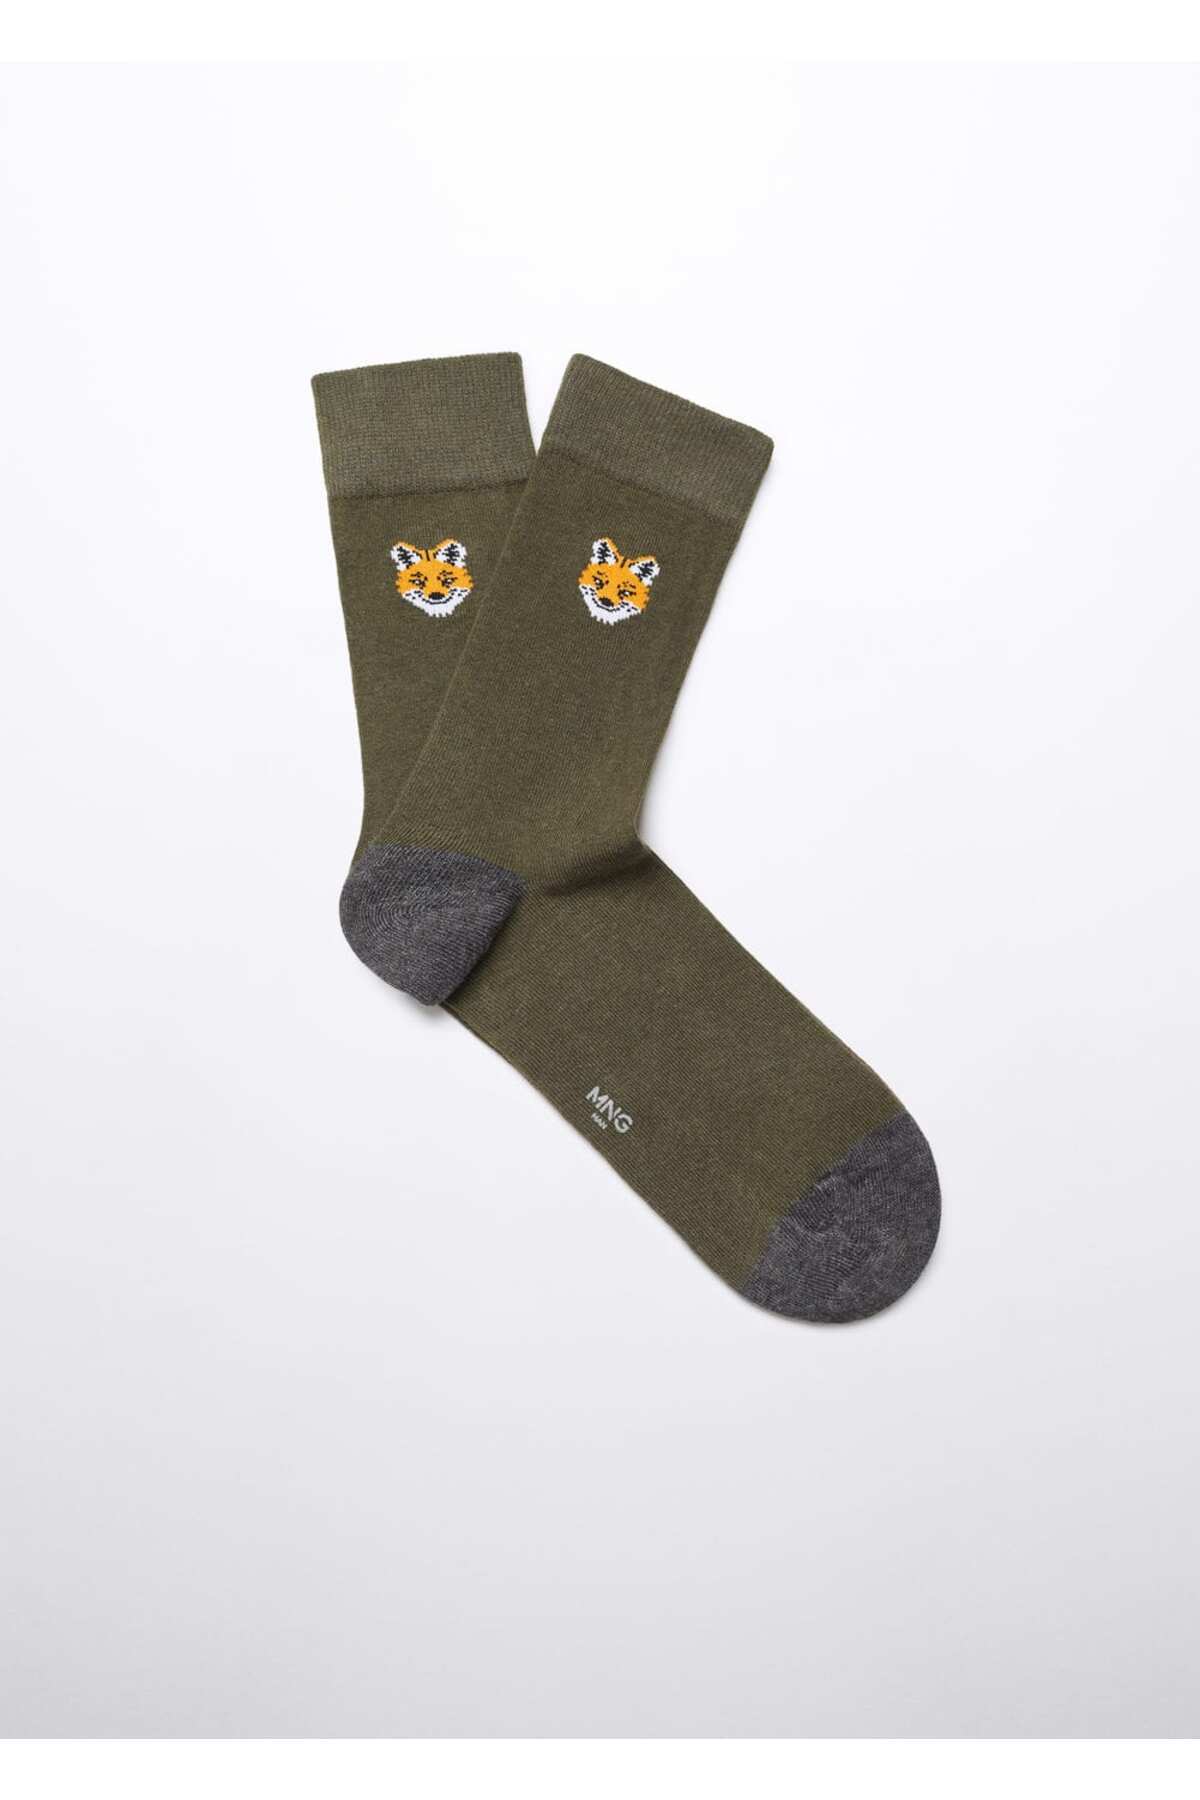 Хлопковые носки с вышивкой лисы Mango, хаки 1 пара хлопковые носки с вышивкой с надписью love